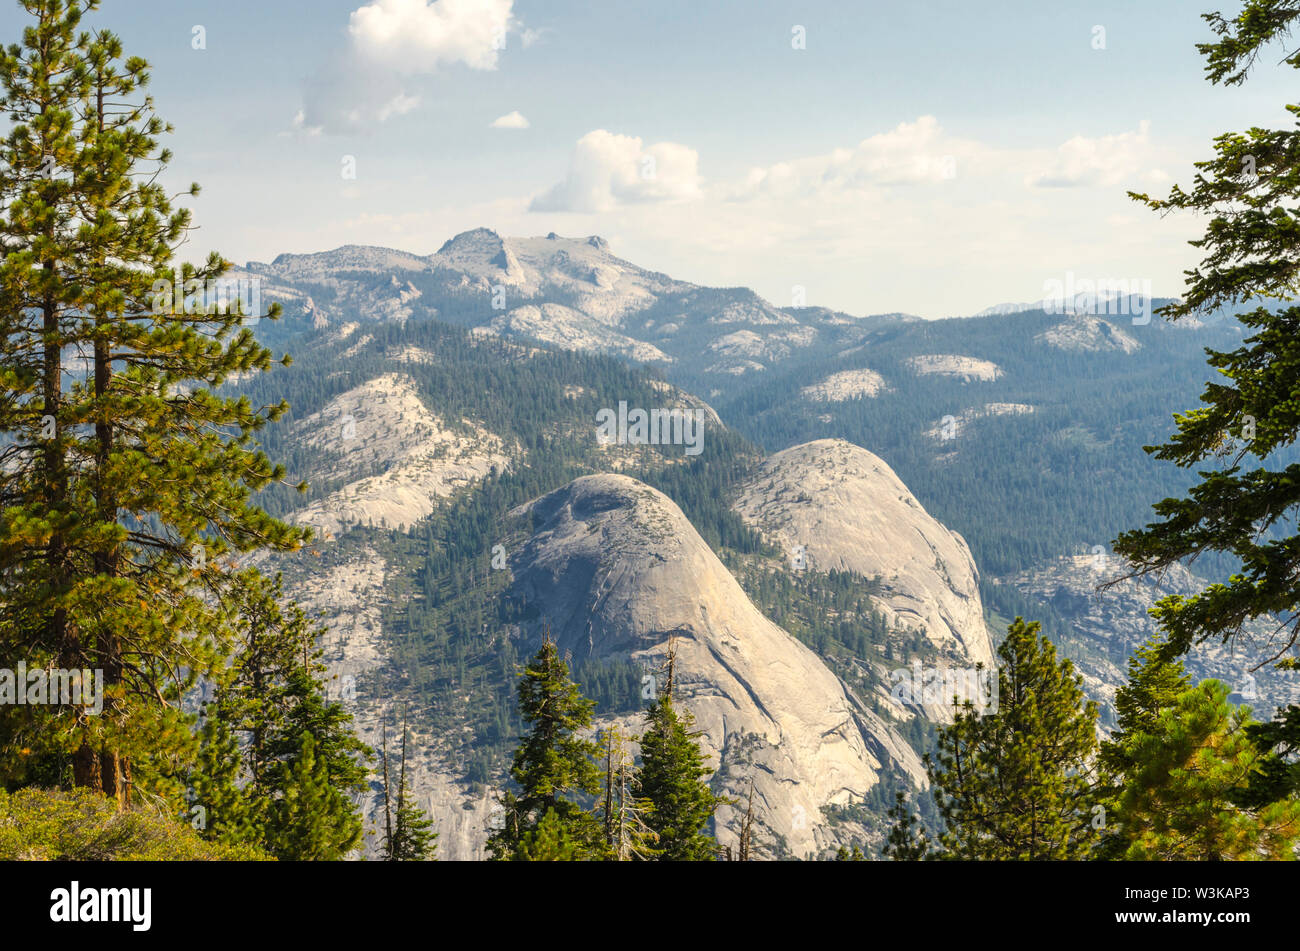 North Dome et panier Dome vue de sentinelle le long de la piste du dôme. Yosemite National Park, California, USA. Banque D'Images